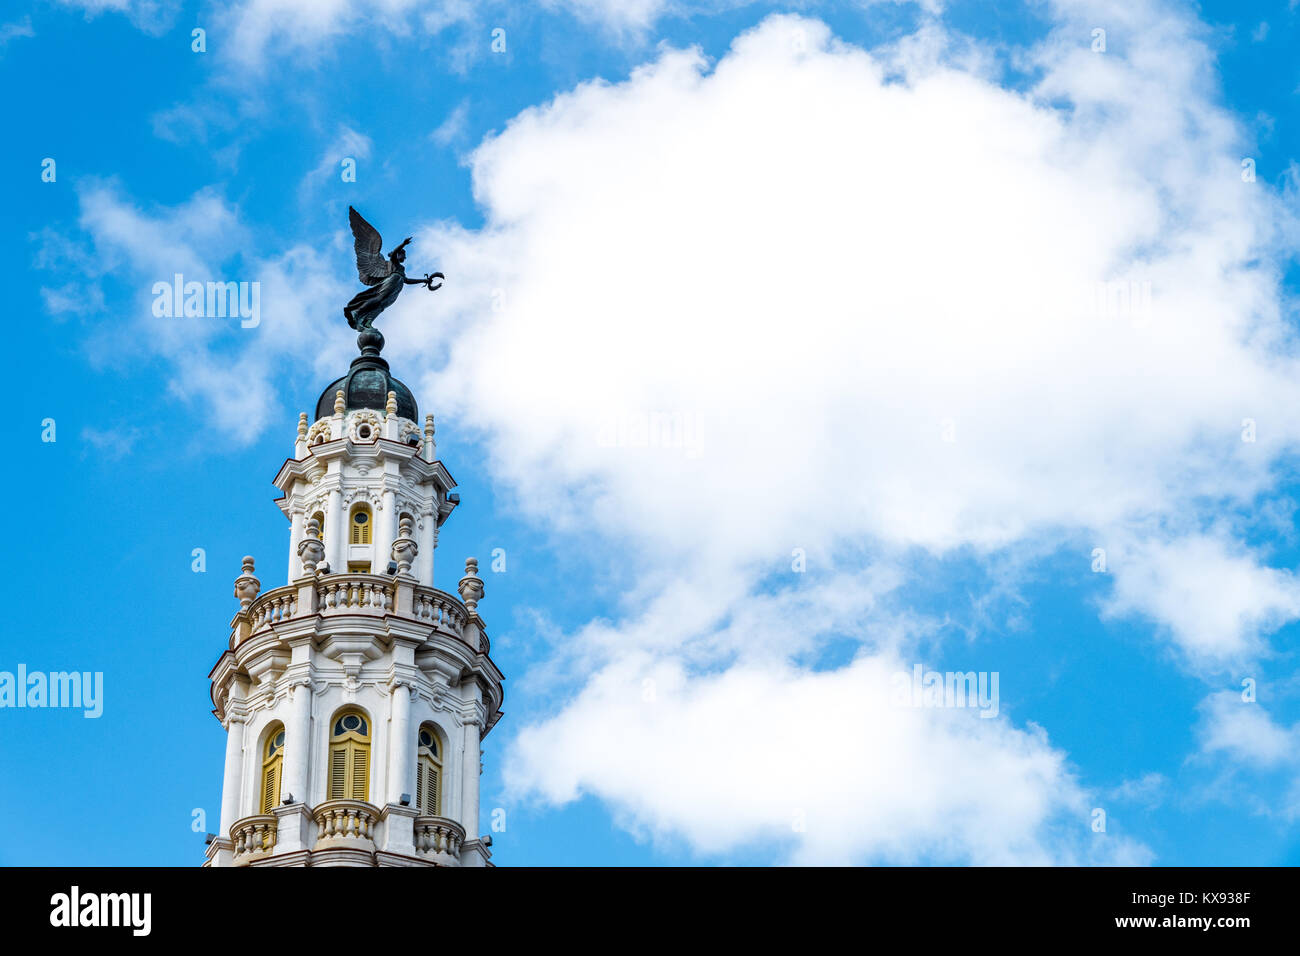 Edificios de la ciudad de La Habana Stockfoto